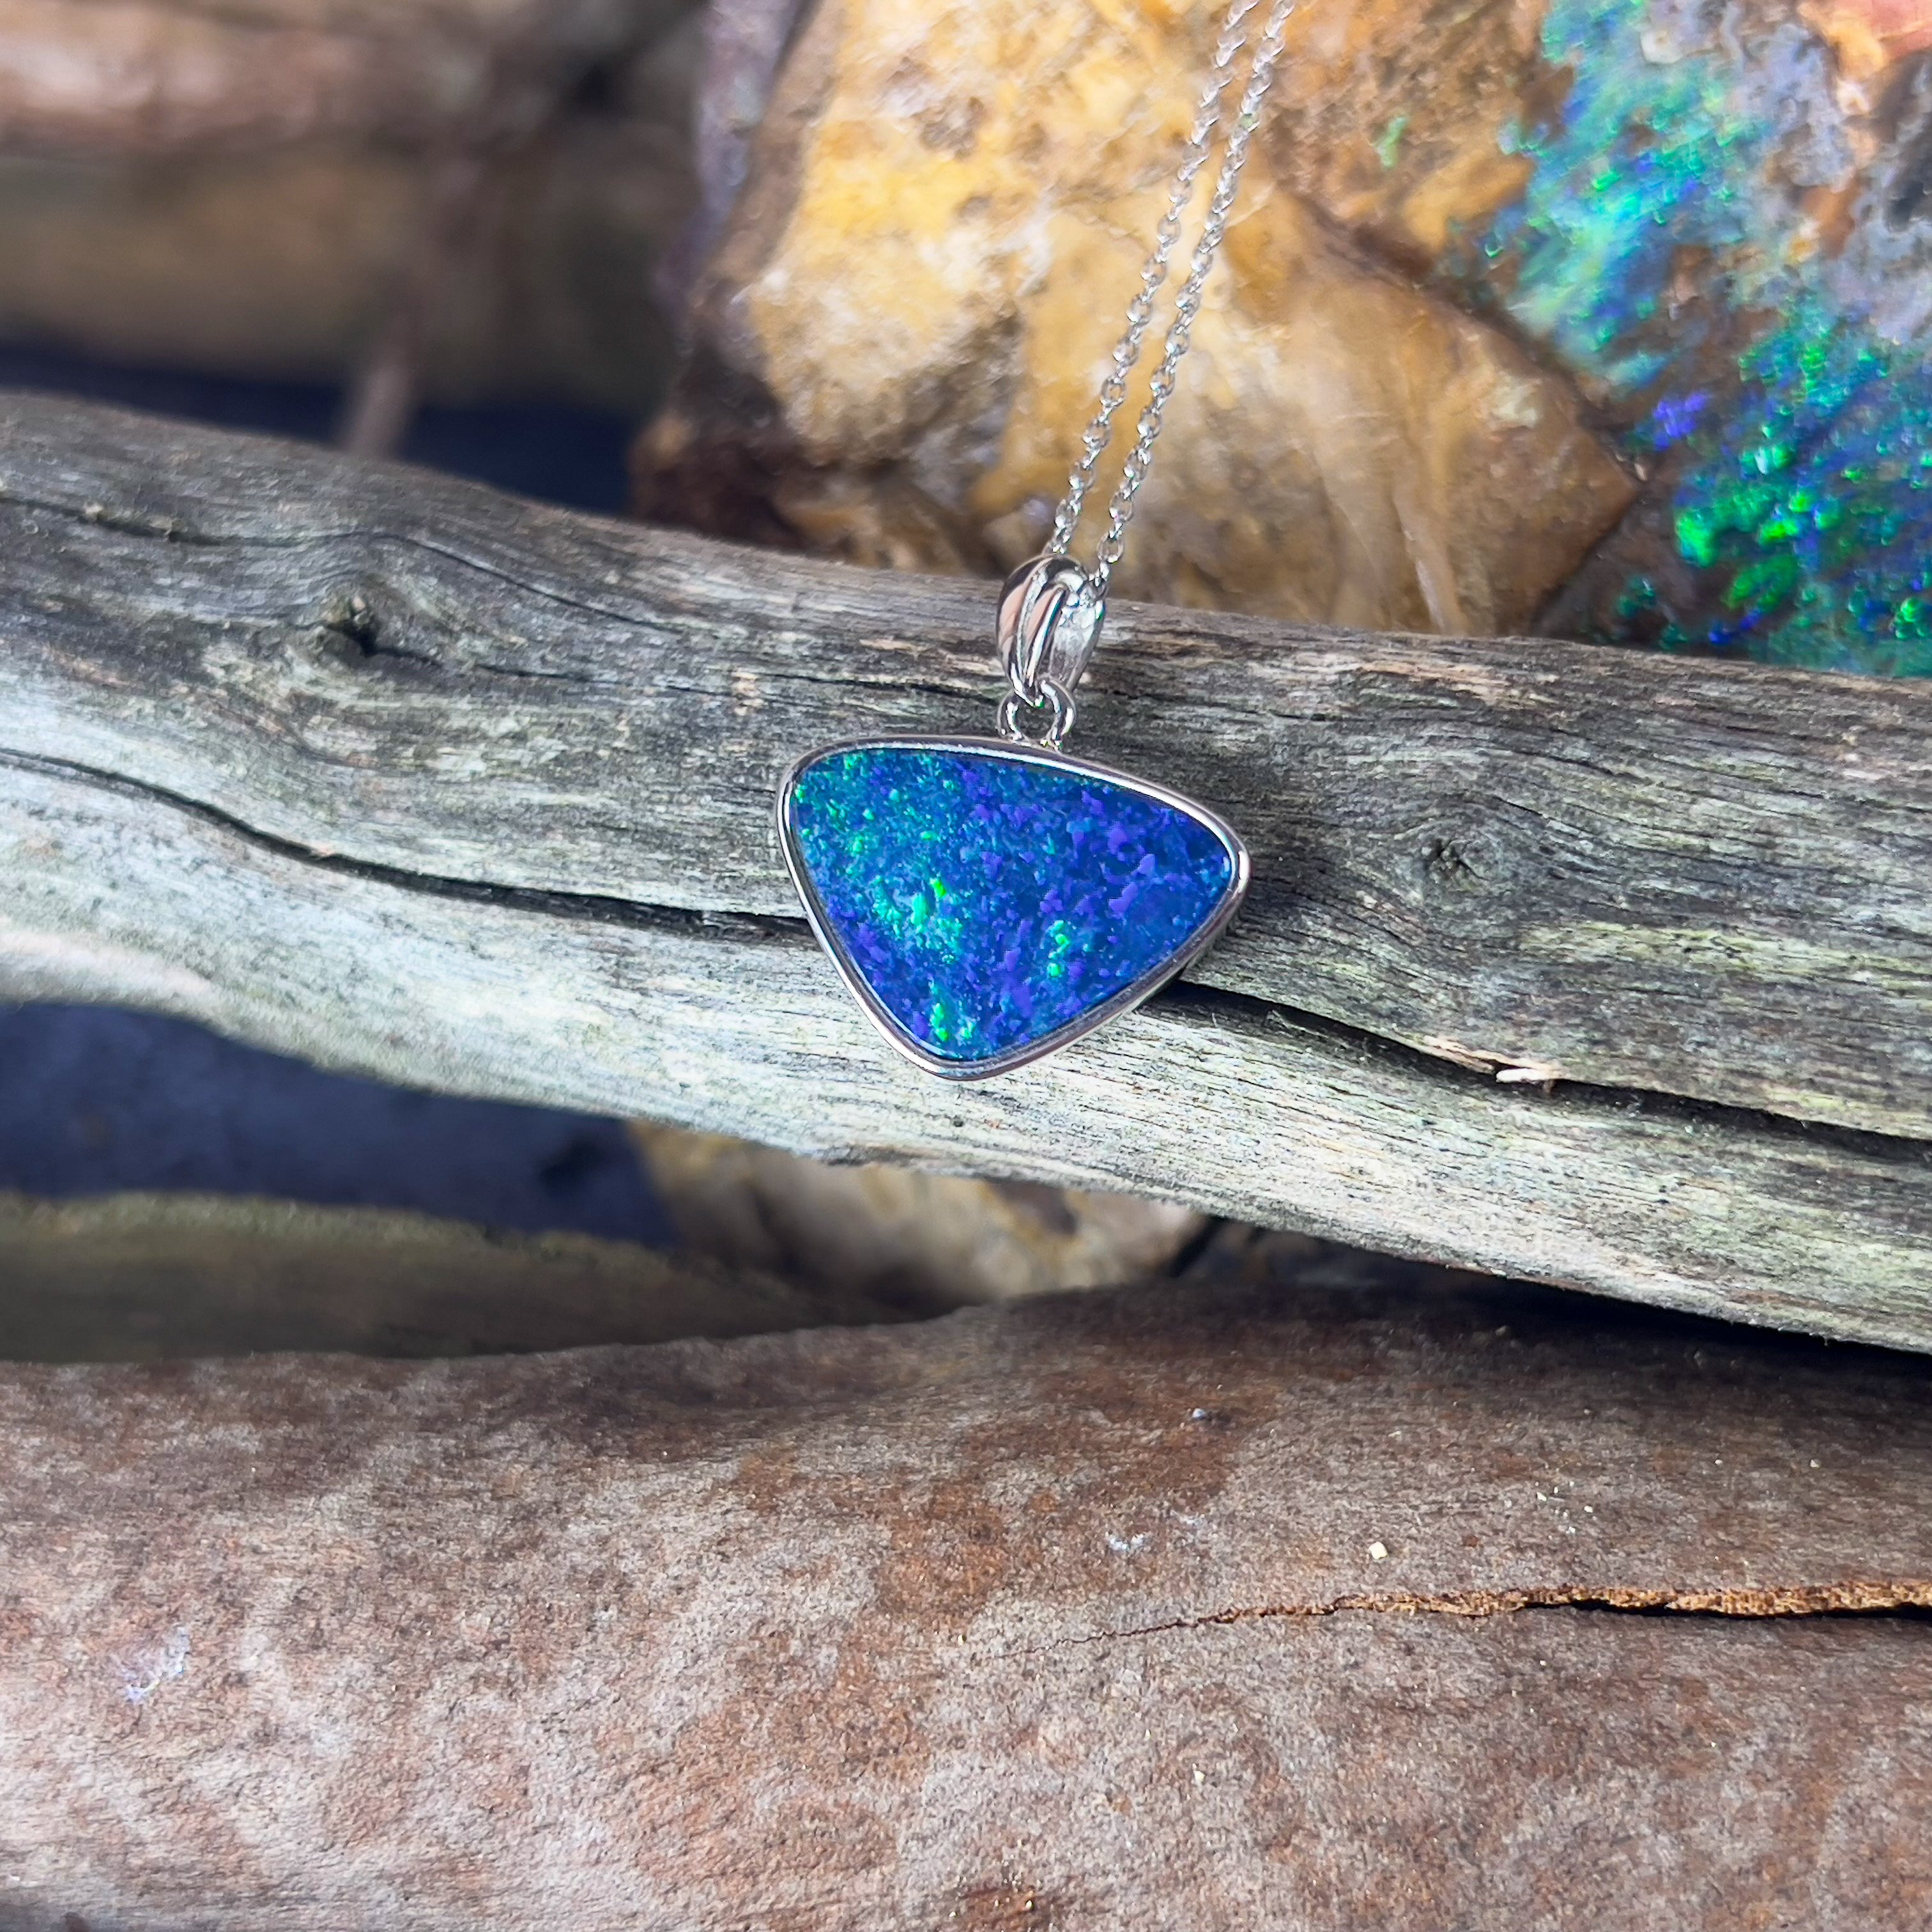 Sterling Silver Blue Green triangle opal doublet 17x13mm pendant - Masterpiece Jewellery Opal & Gems Sydney Australia | Online Shop